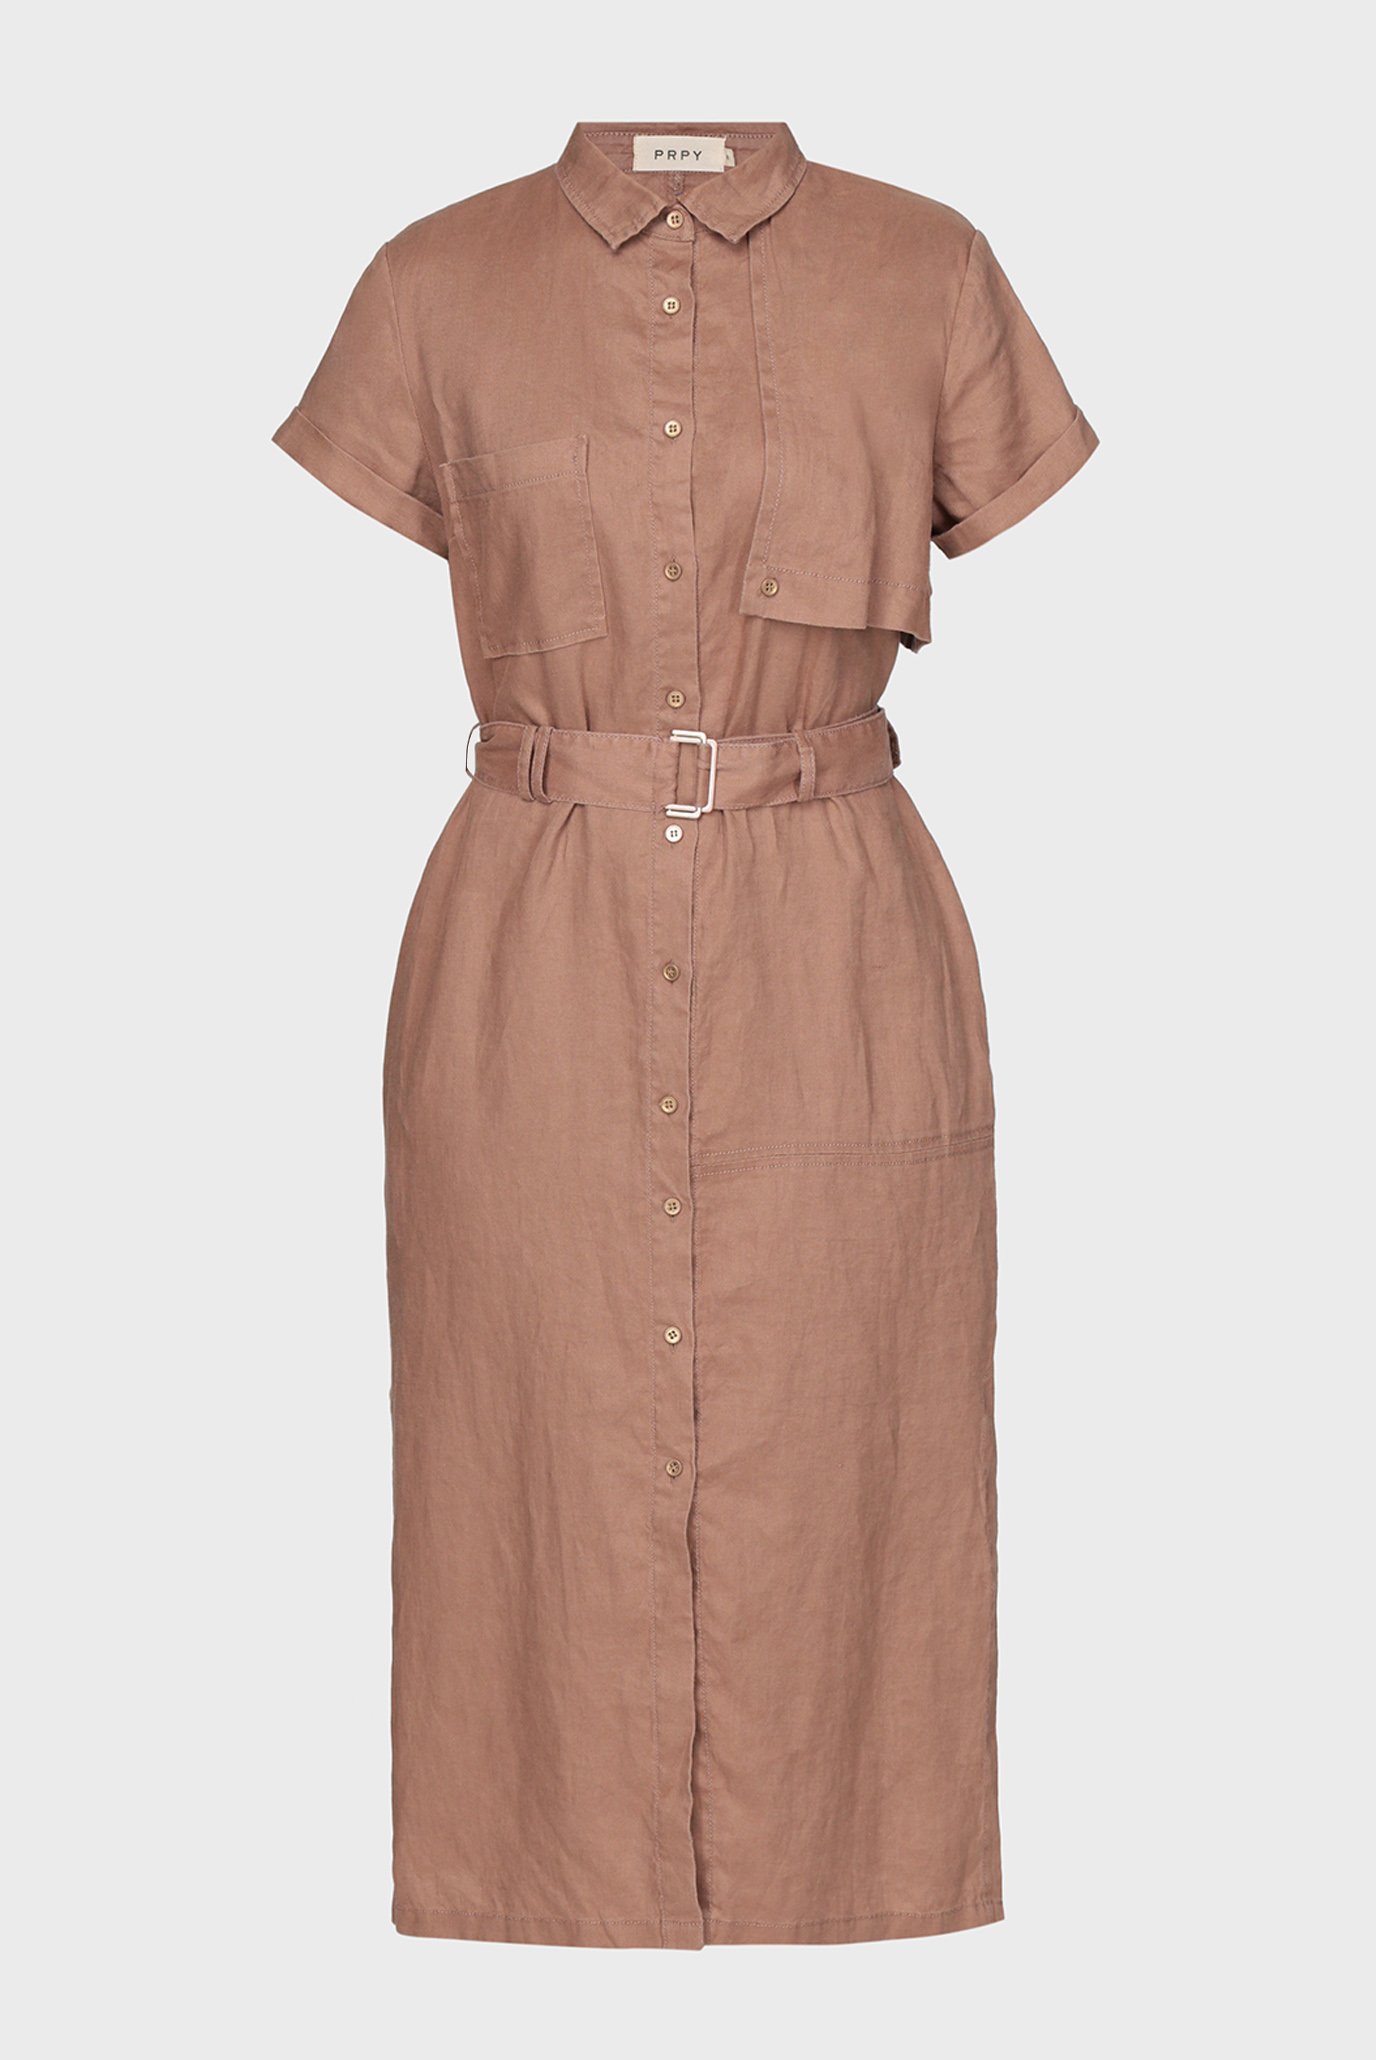 Женское коричневое льняное платье 1